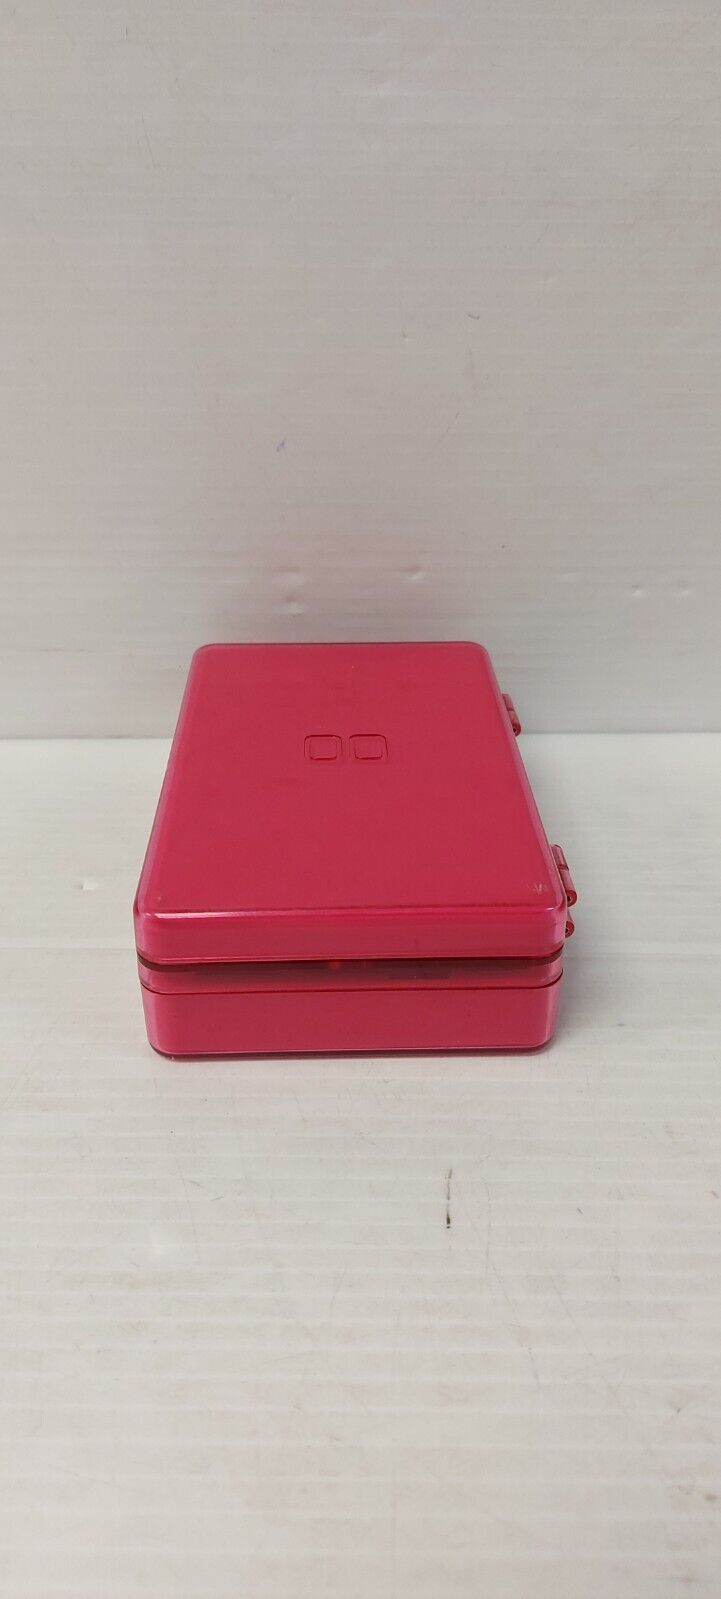 (NI-20163) Nintendo DS Lite Hard Case